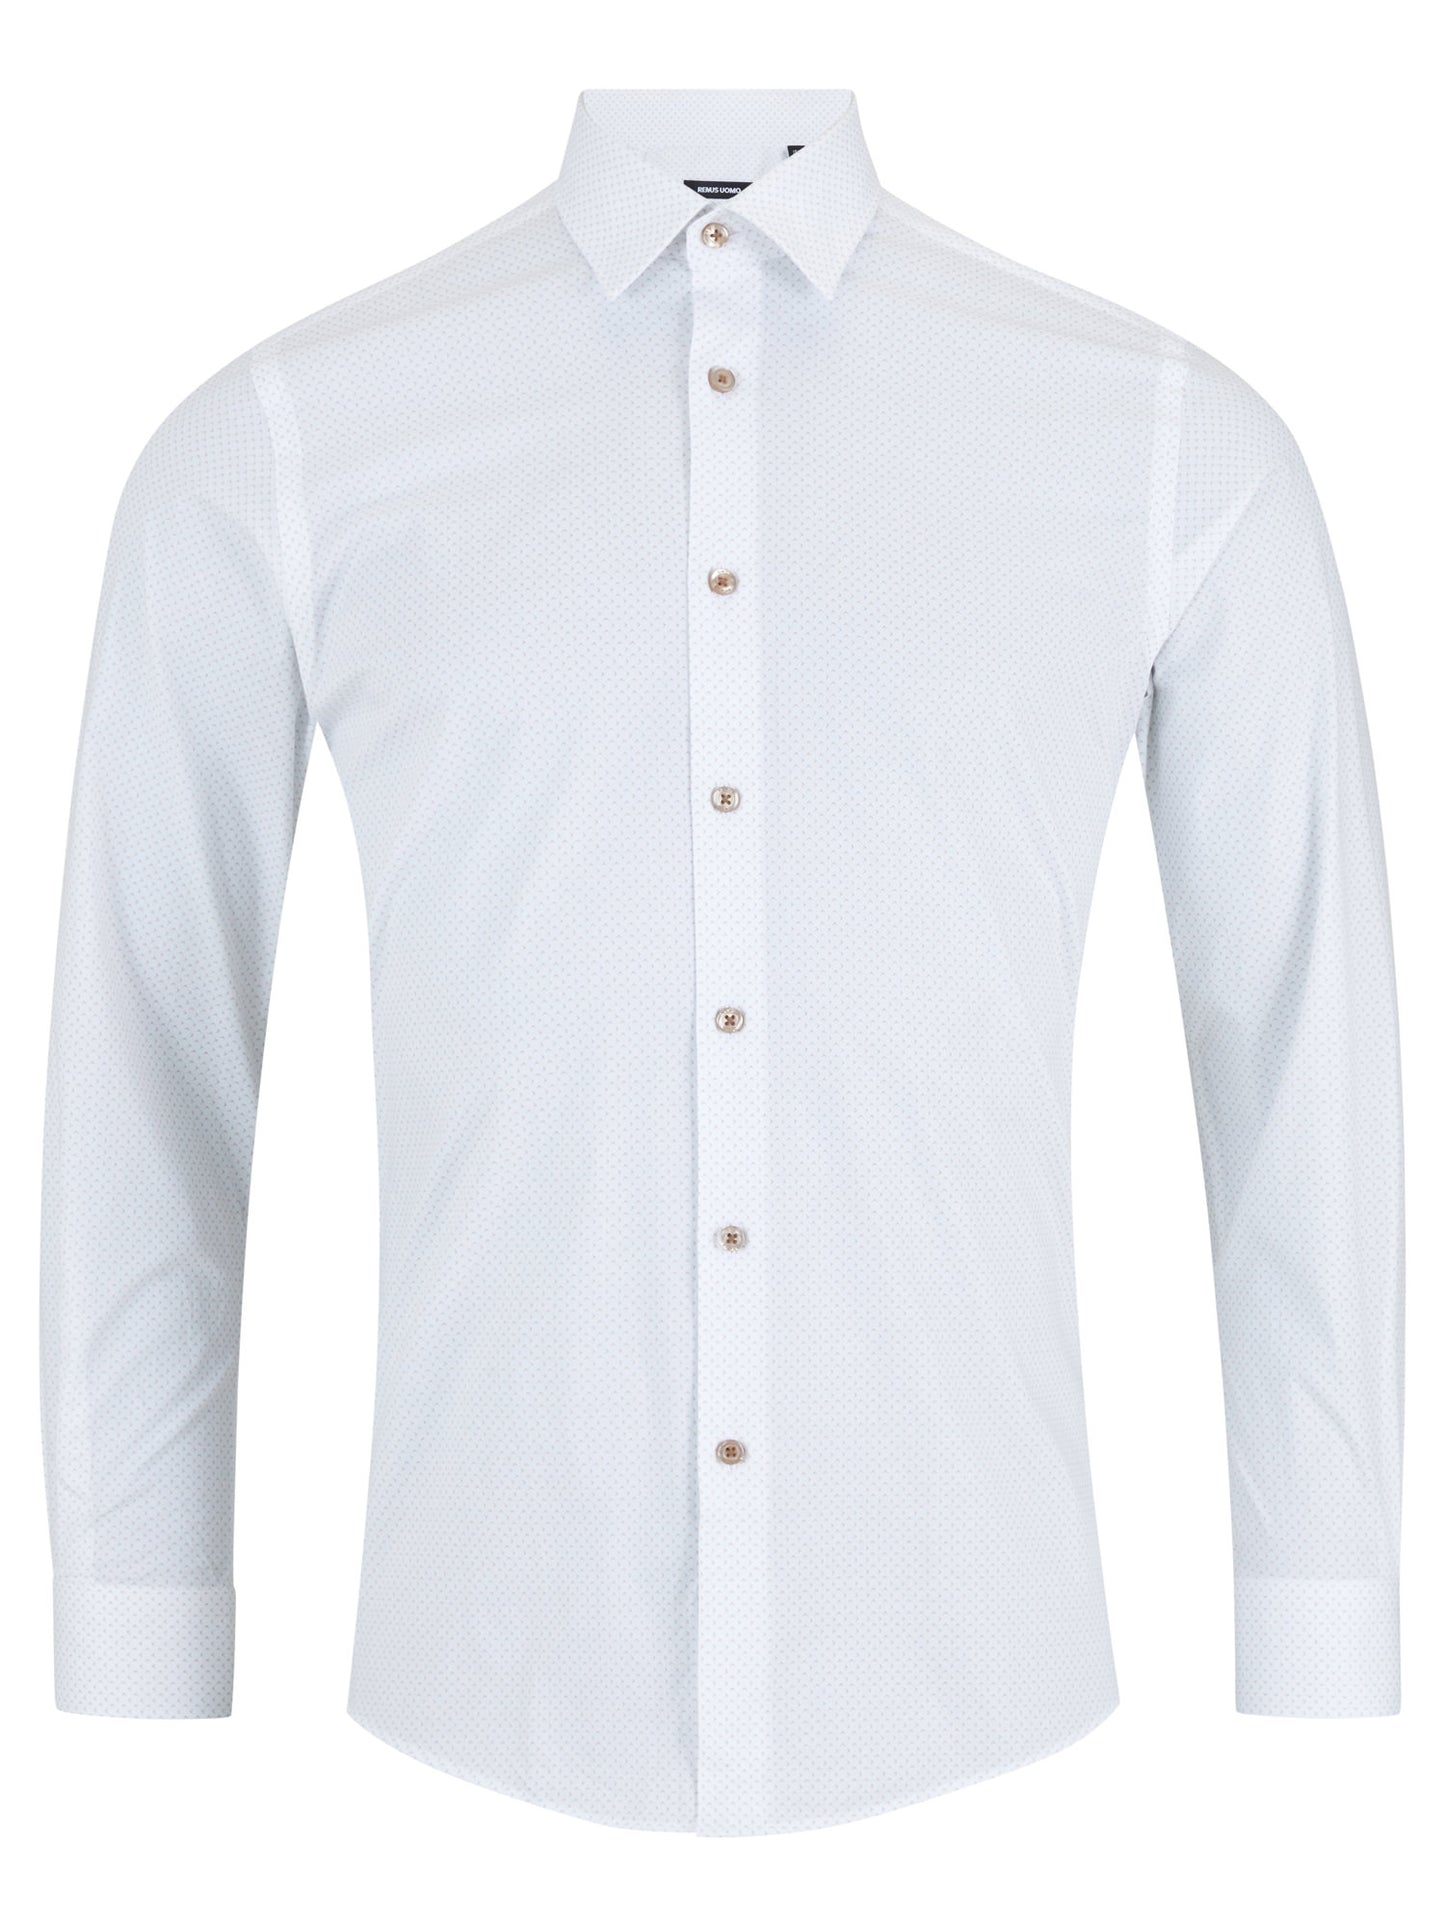 Remus Uomo 18716 15 Tan Dress Shirt